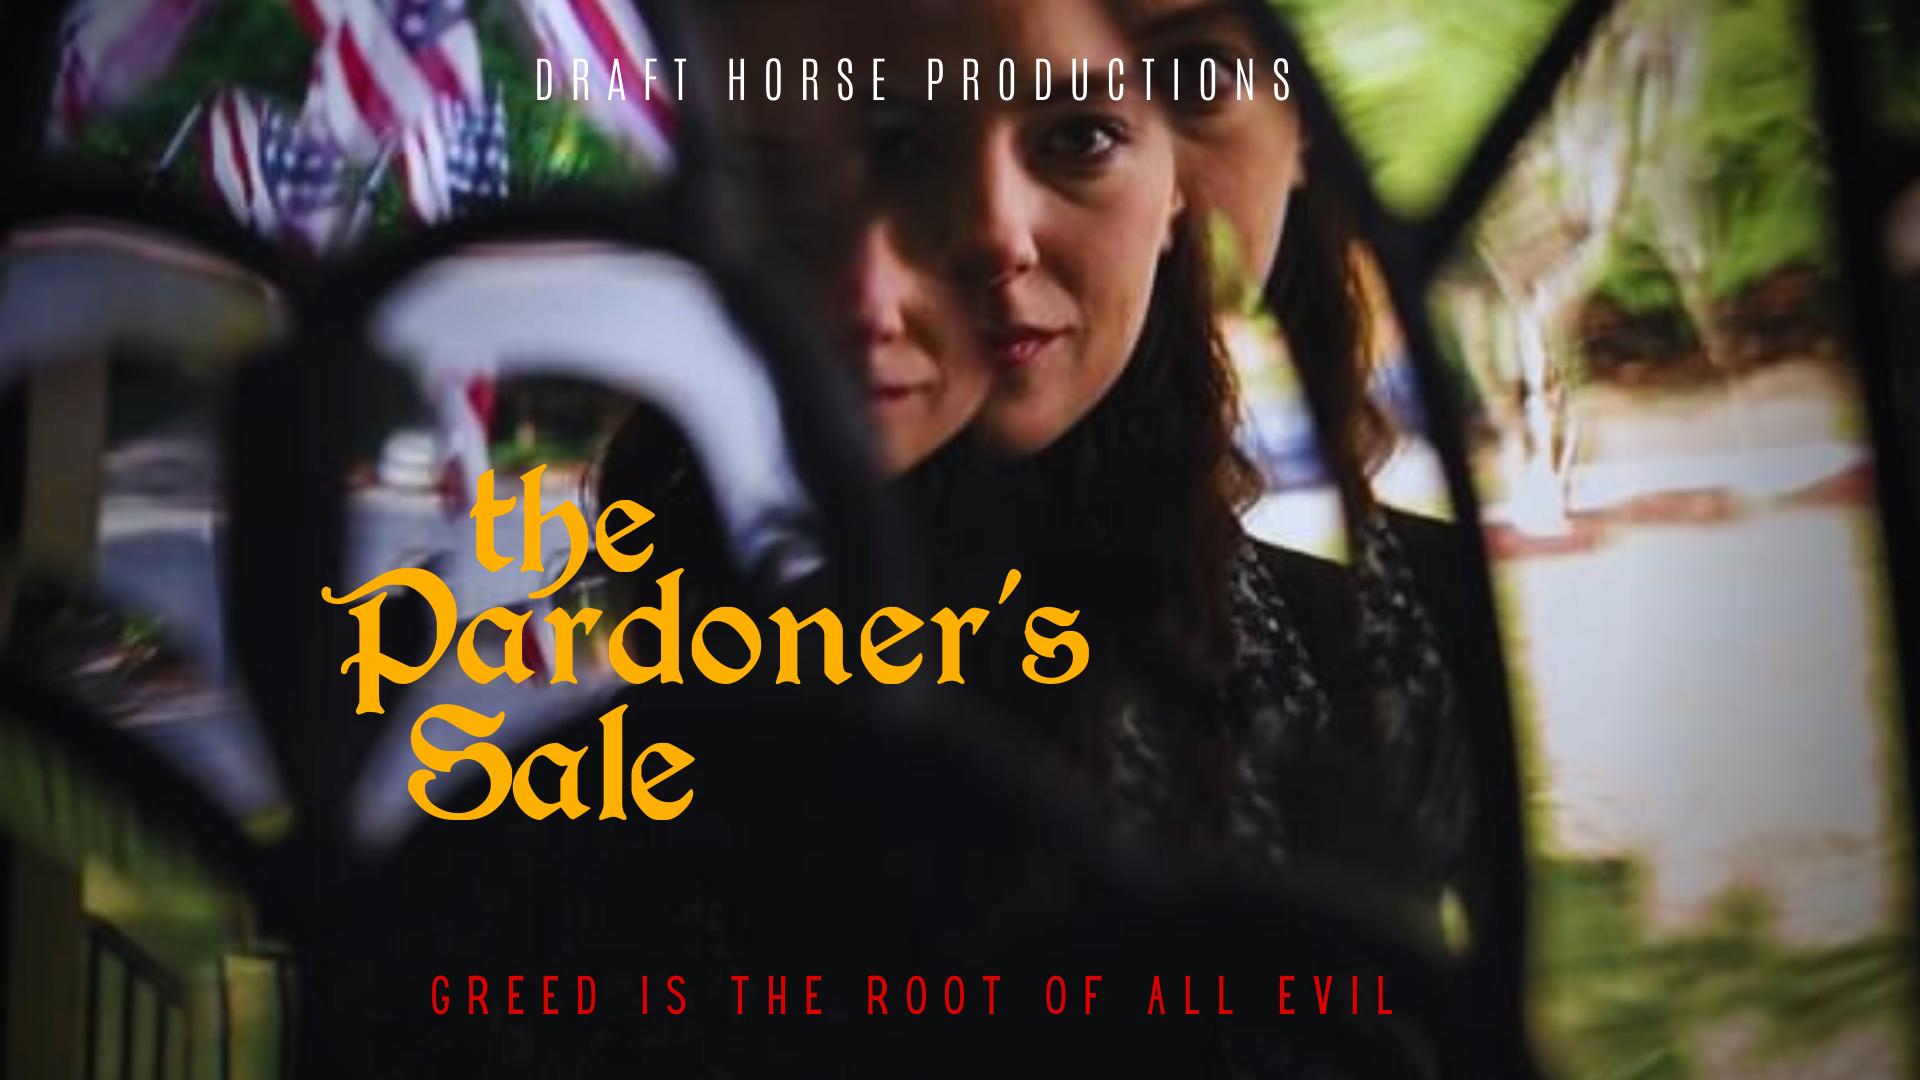 The Pardoner's Sale